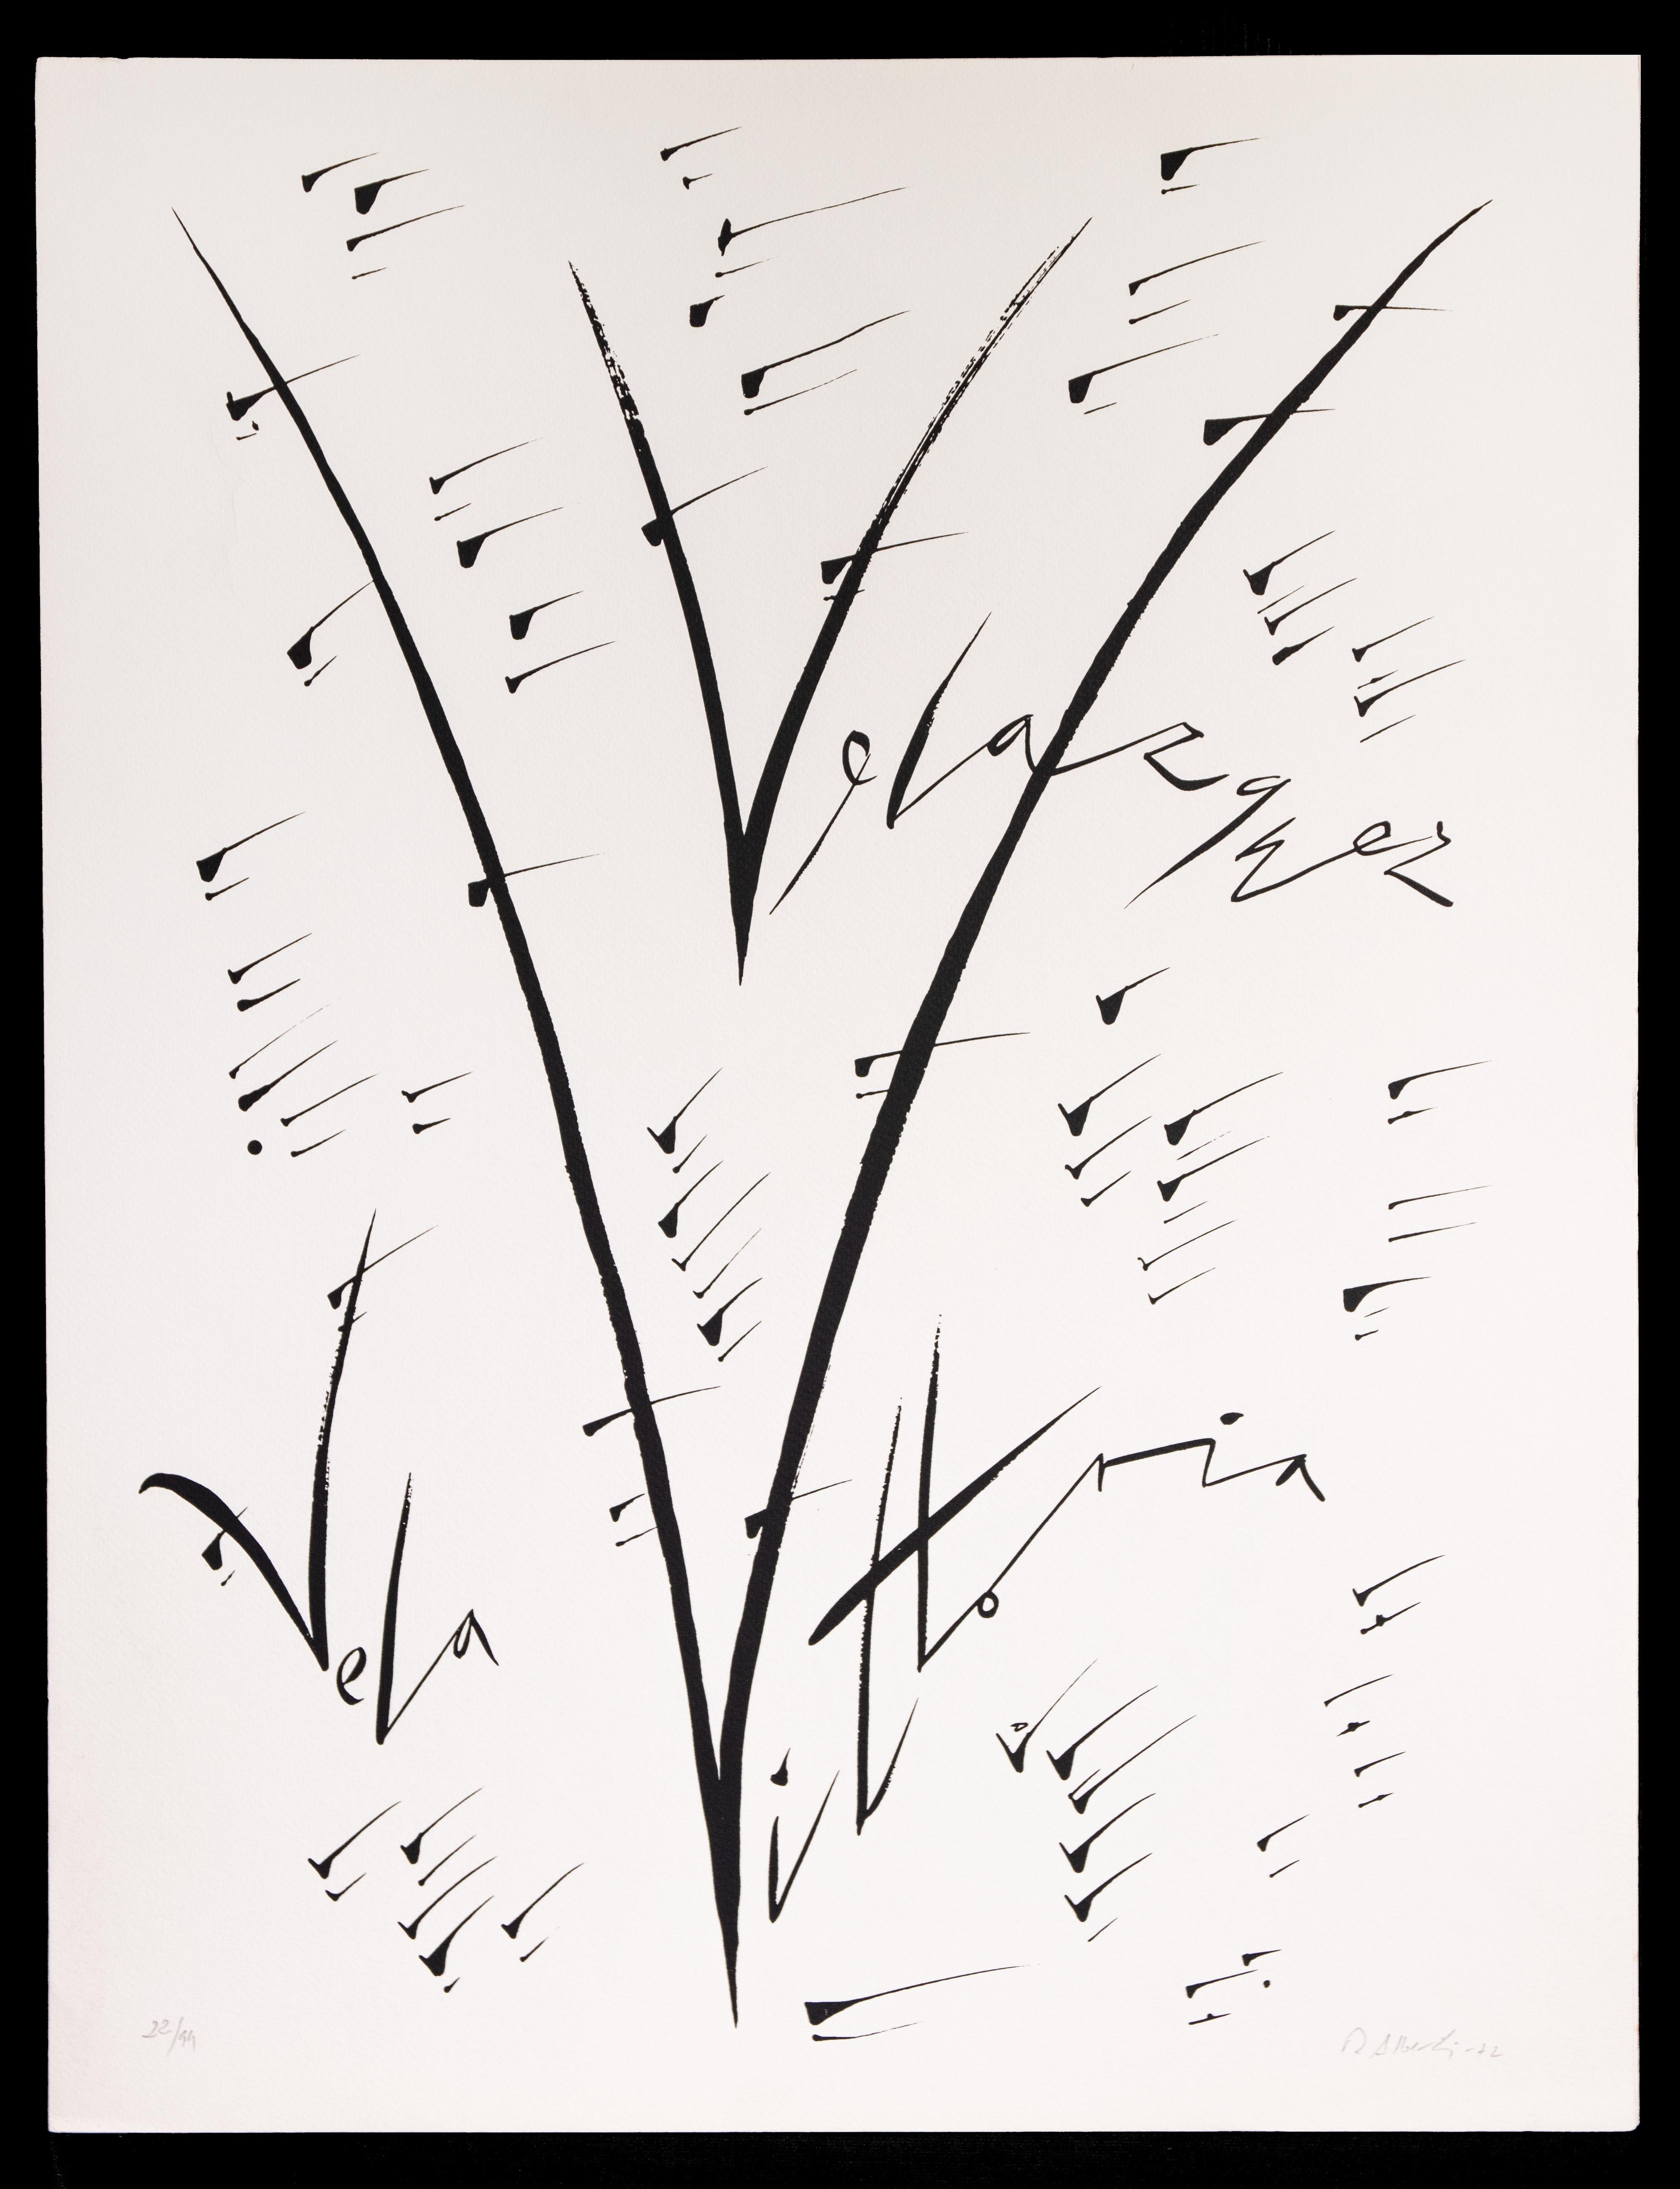 Lettre V de Rafael Alberti, de la série Alphabet,  est une lithographie originale, réalisée par Rafael Alberti en 1972.

Signé à la main, numéroté, édition de XX tirages

L'état de conservation est très bon.

L'œuvre représente la lettre V de